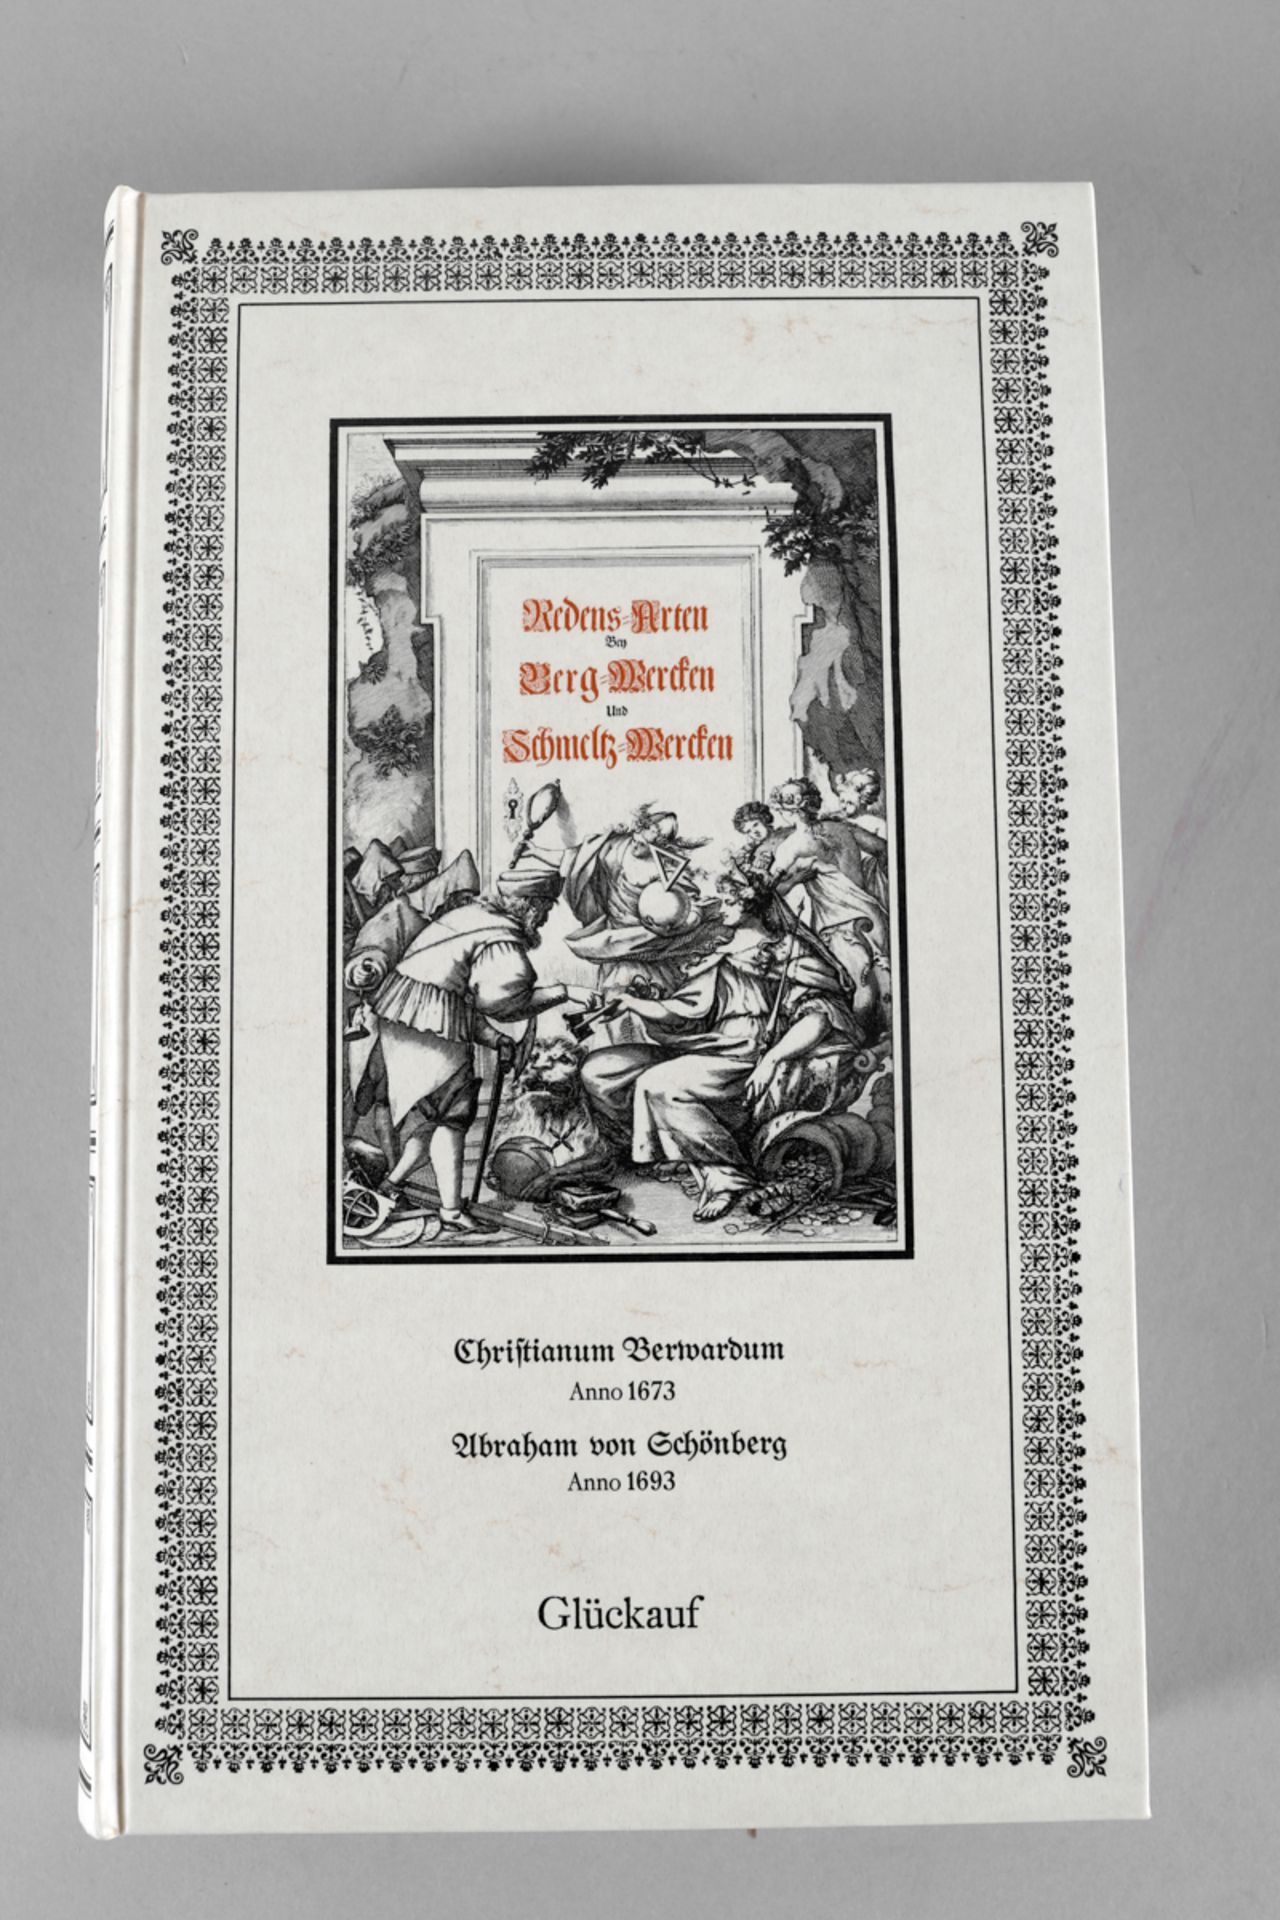 AK - Redens-Arten von Bergwerken und Schmelz-Werken von Christianum Berwardum Anno 1673